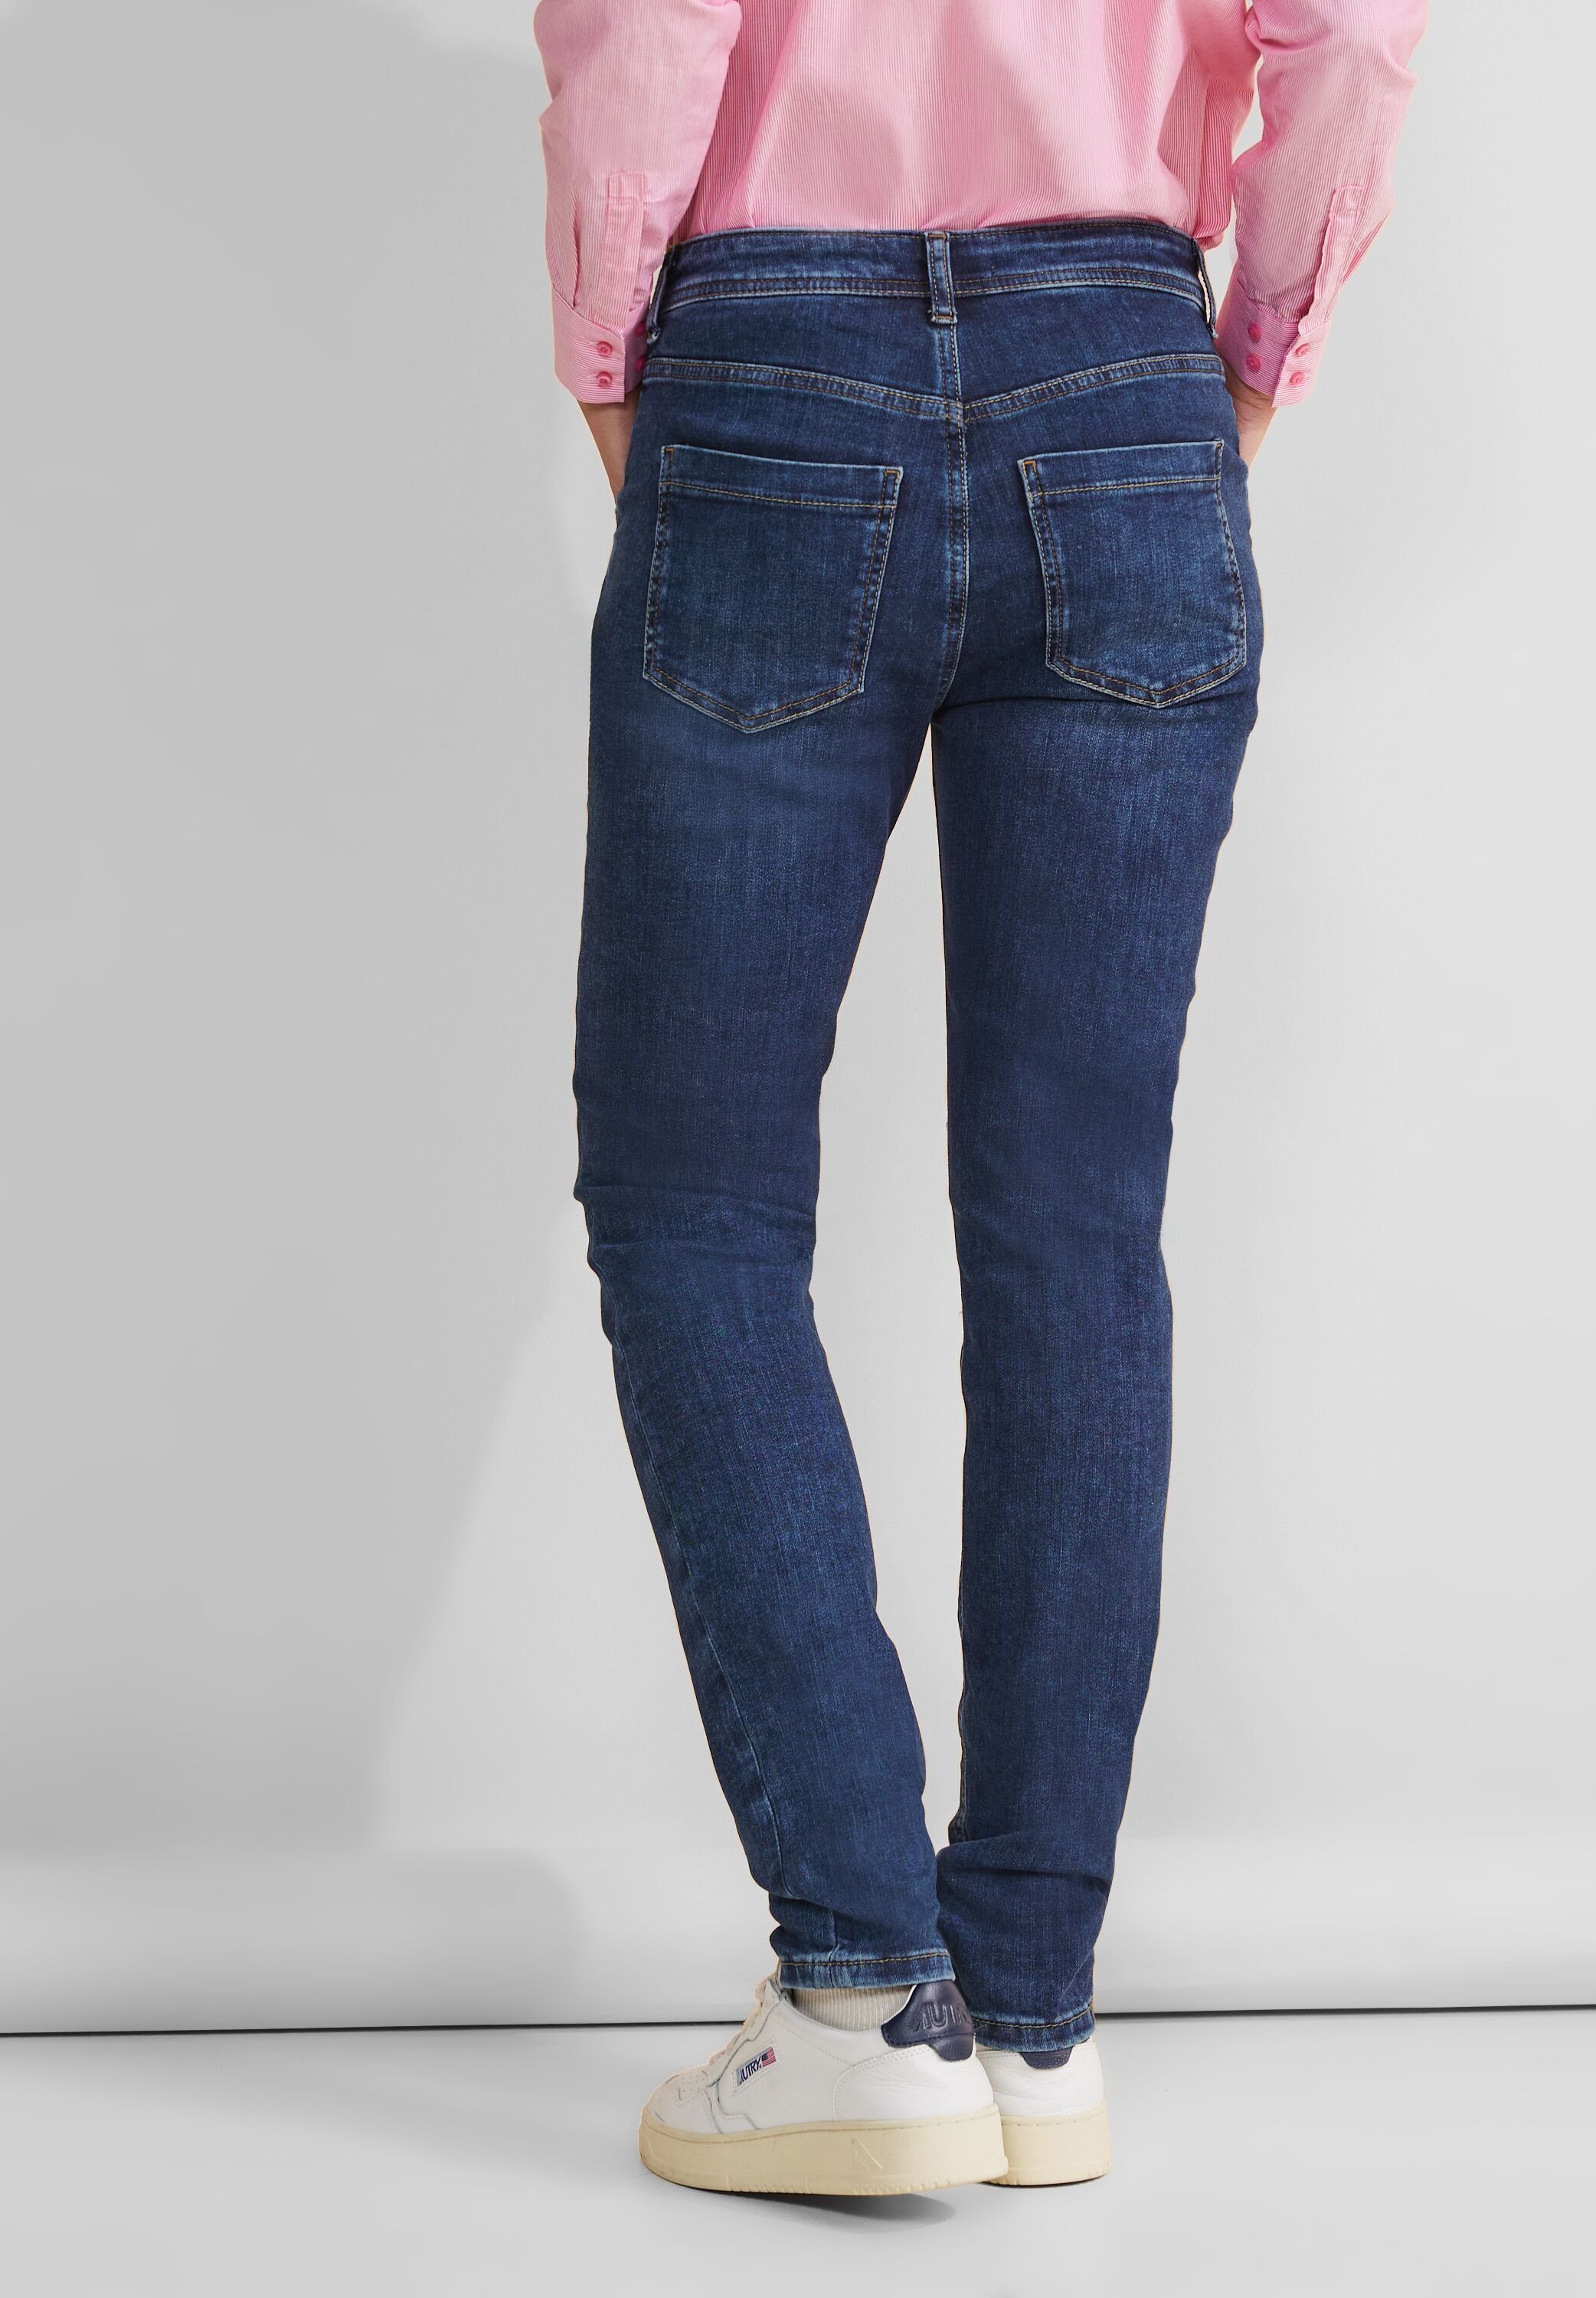 STREET ONE High-waist jeans QR JANE met elastaan in slim fit